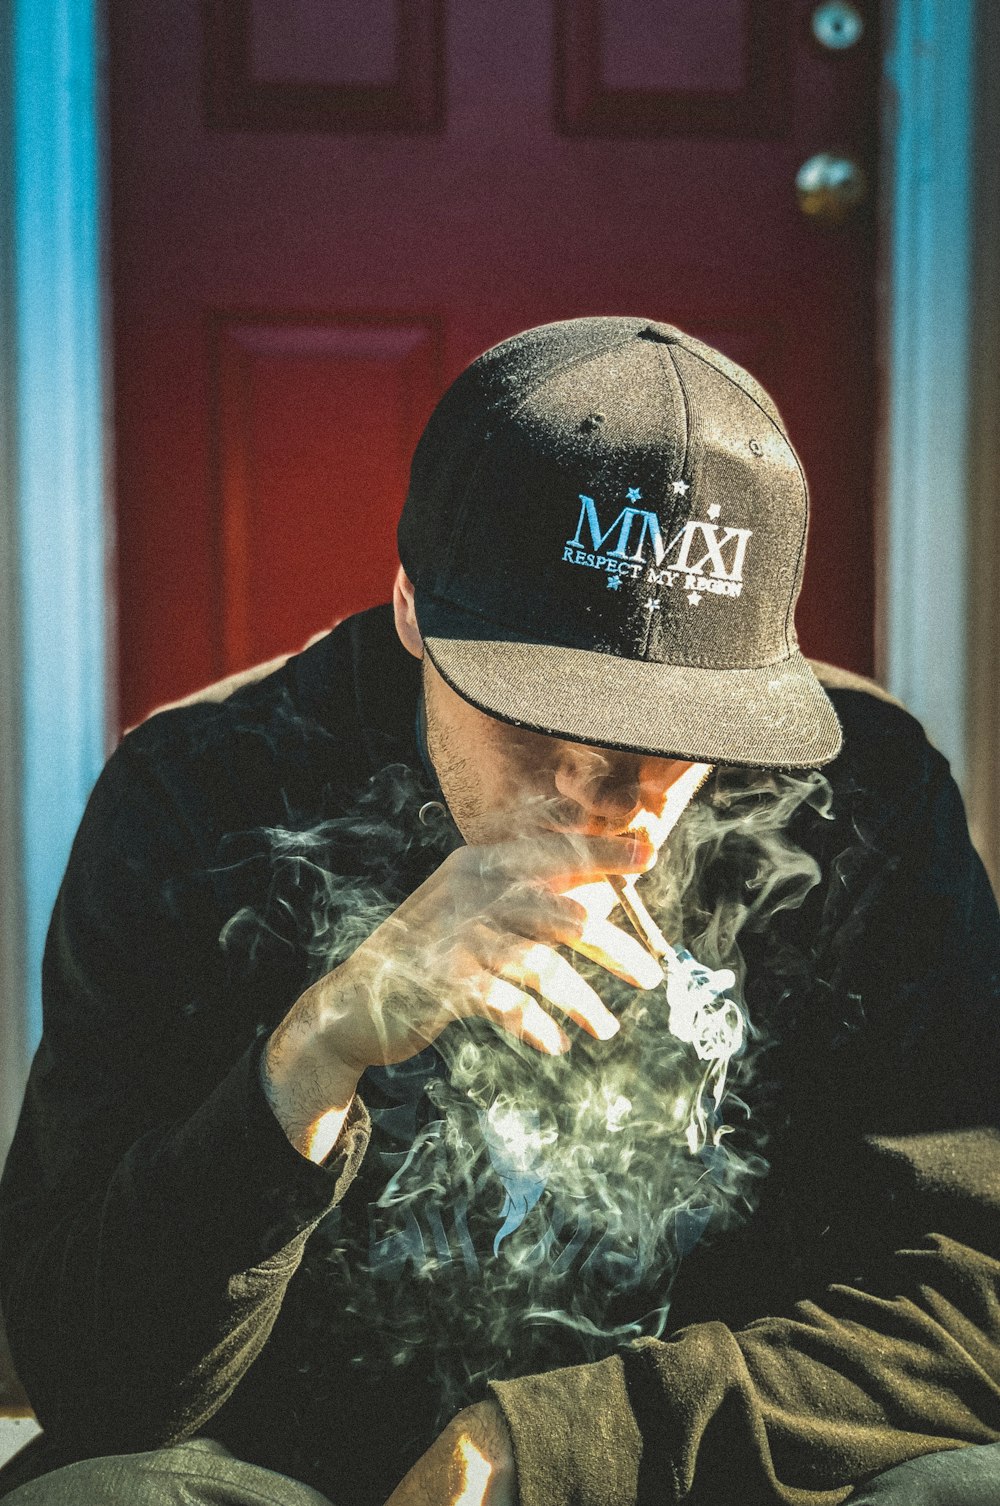 man in black cap and shirt sitting near door while smoking